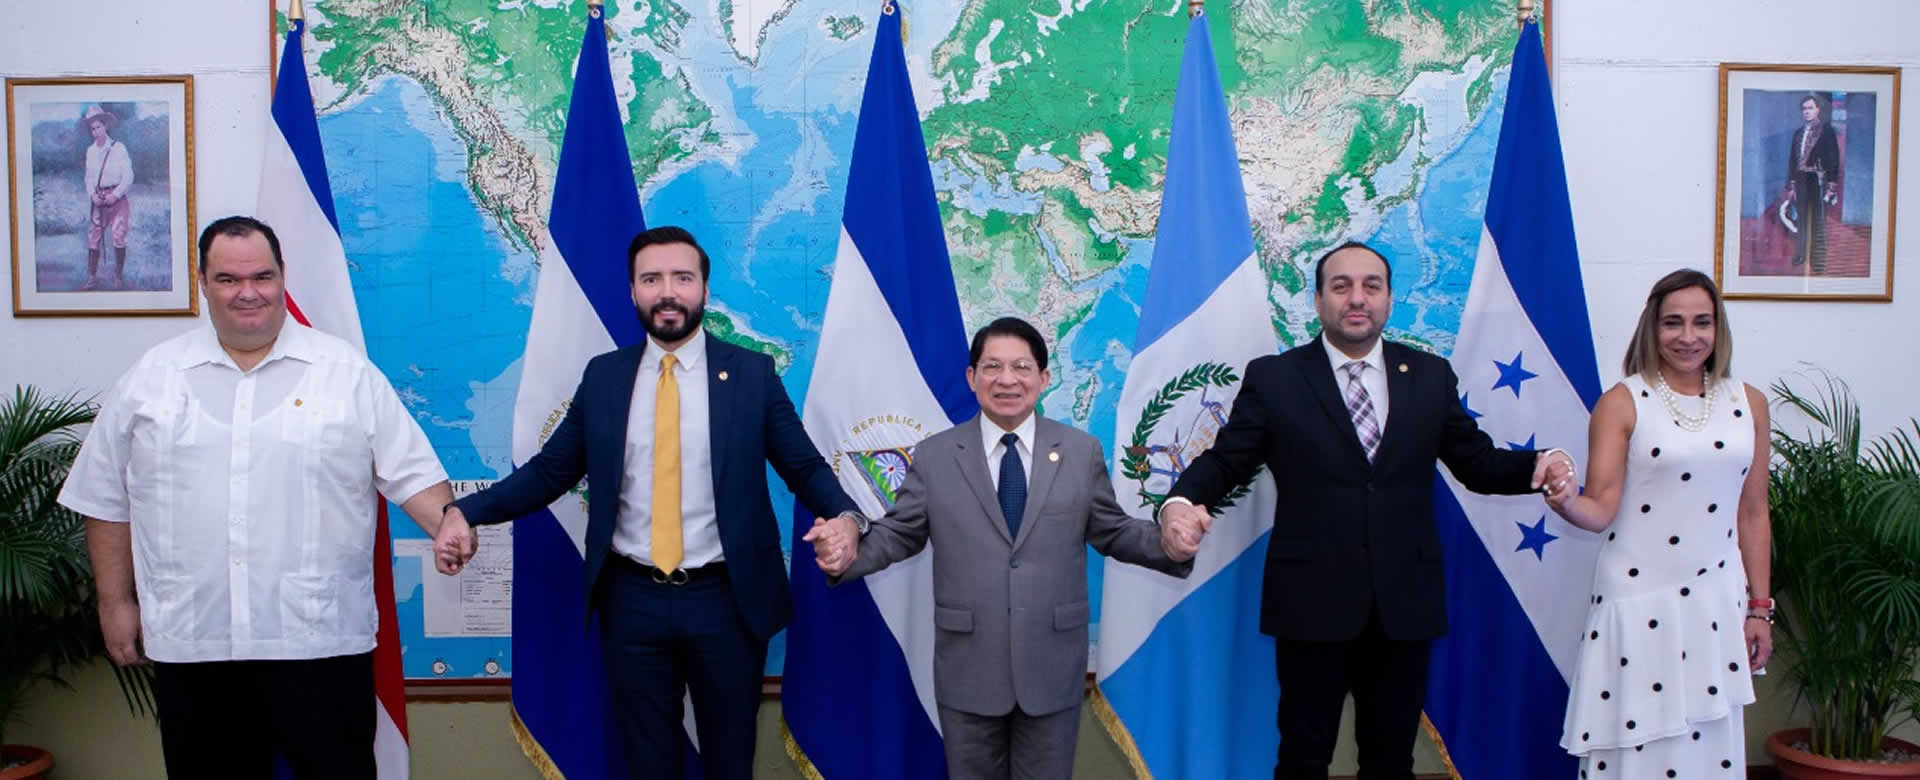 Embajadores centroamericanos se reúnen para celebrar la Independencia